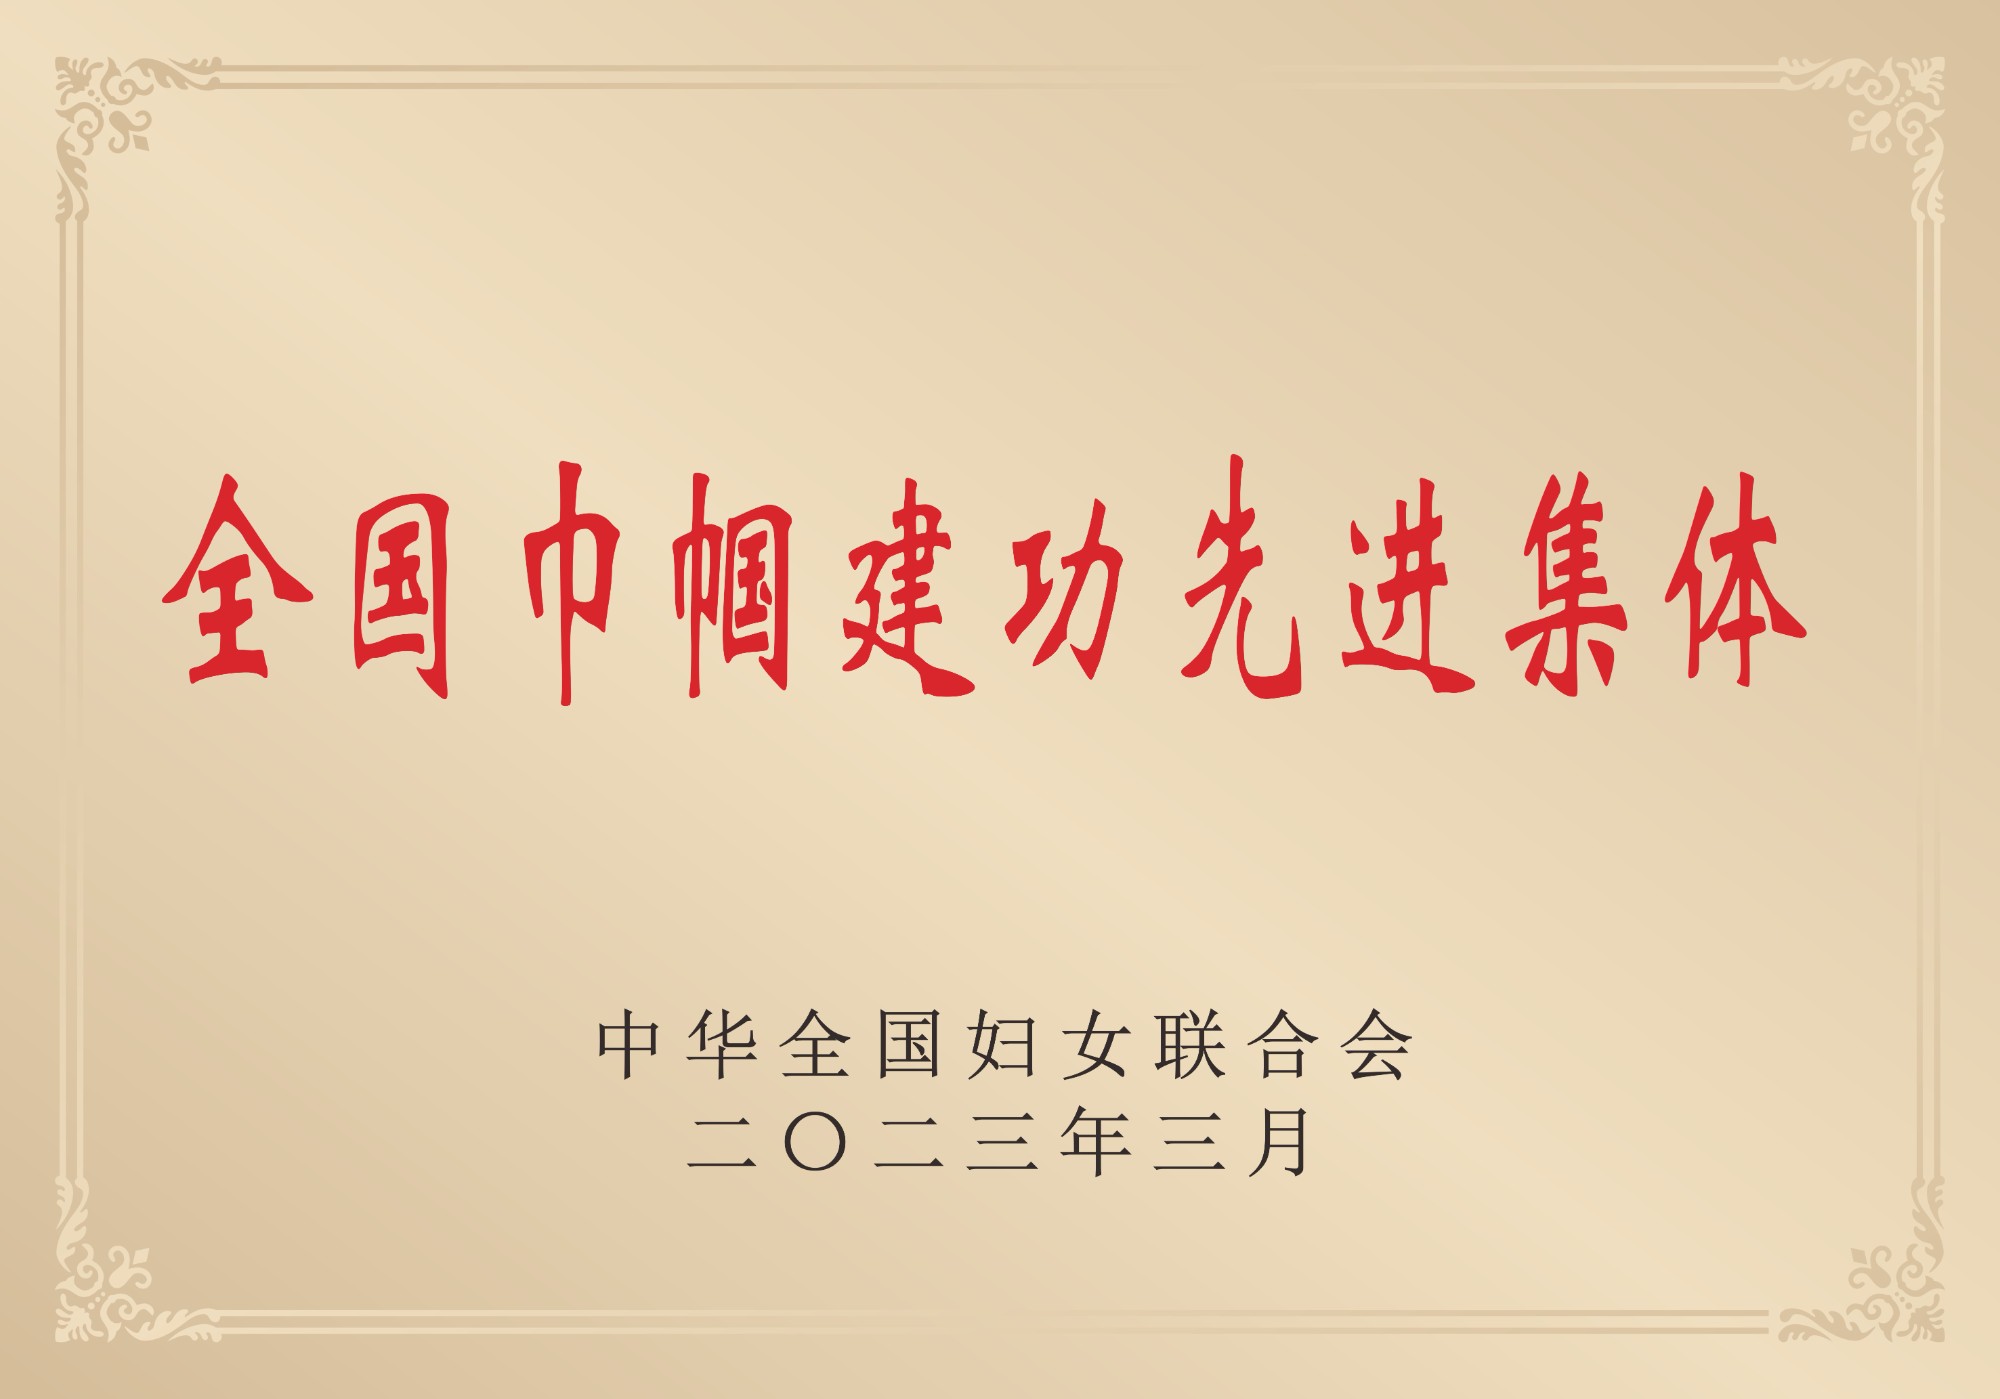 2023年榮獲中華全國婦女聯合會頒發“全國巾幗建功先進集體”稱號